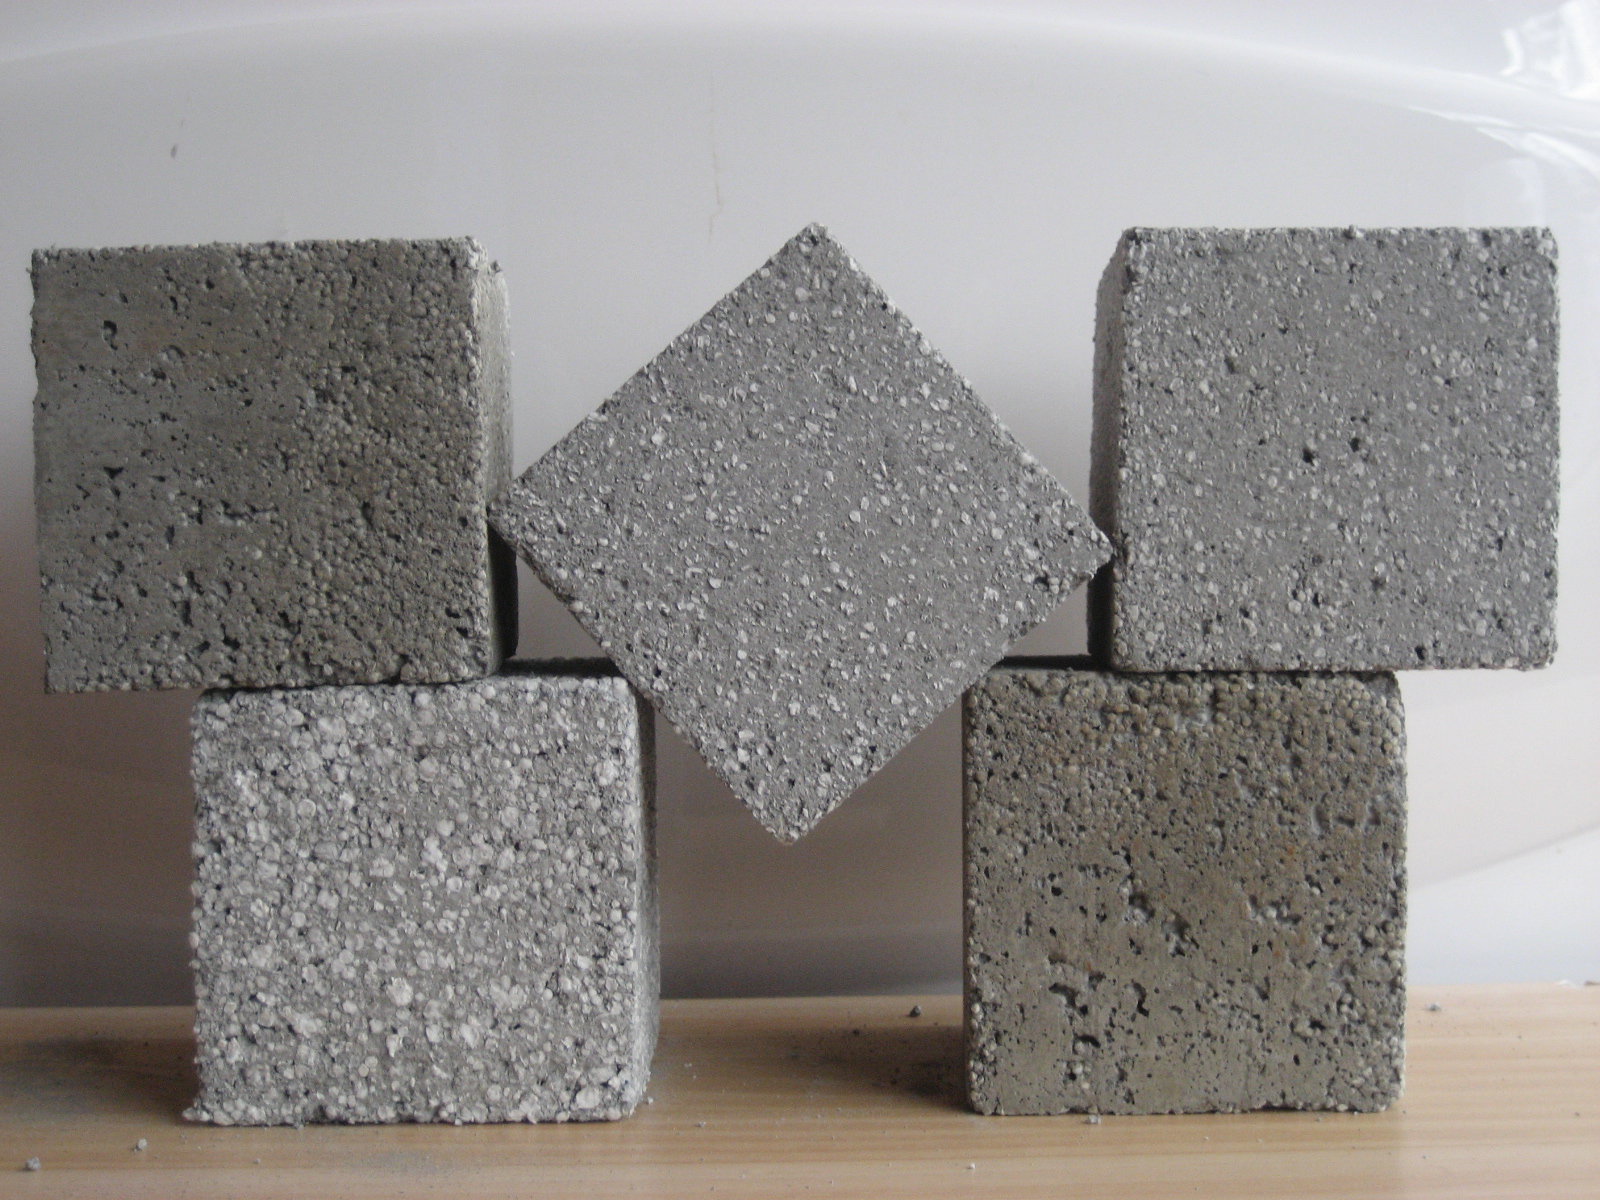 цена бетона за куб